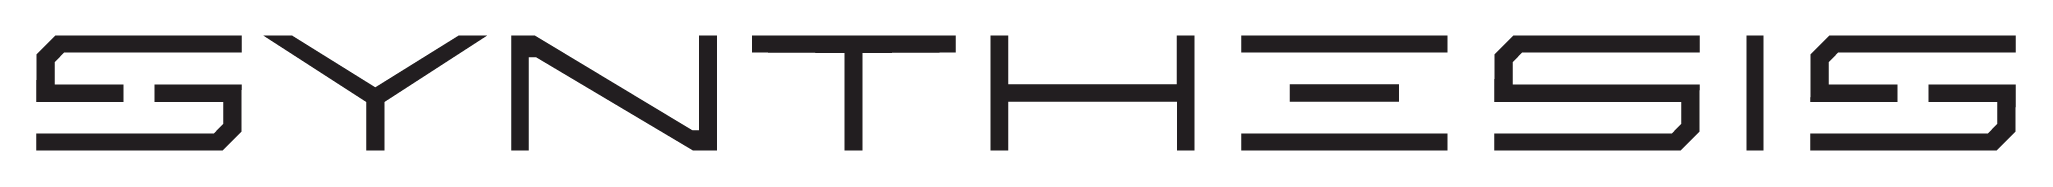 synthesis logo